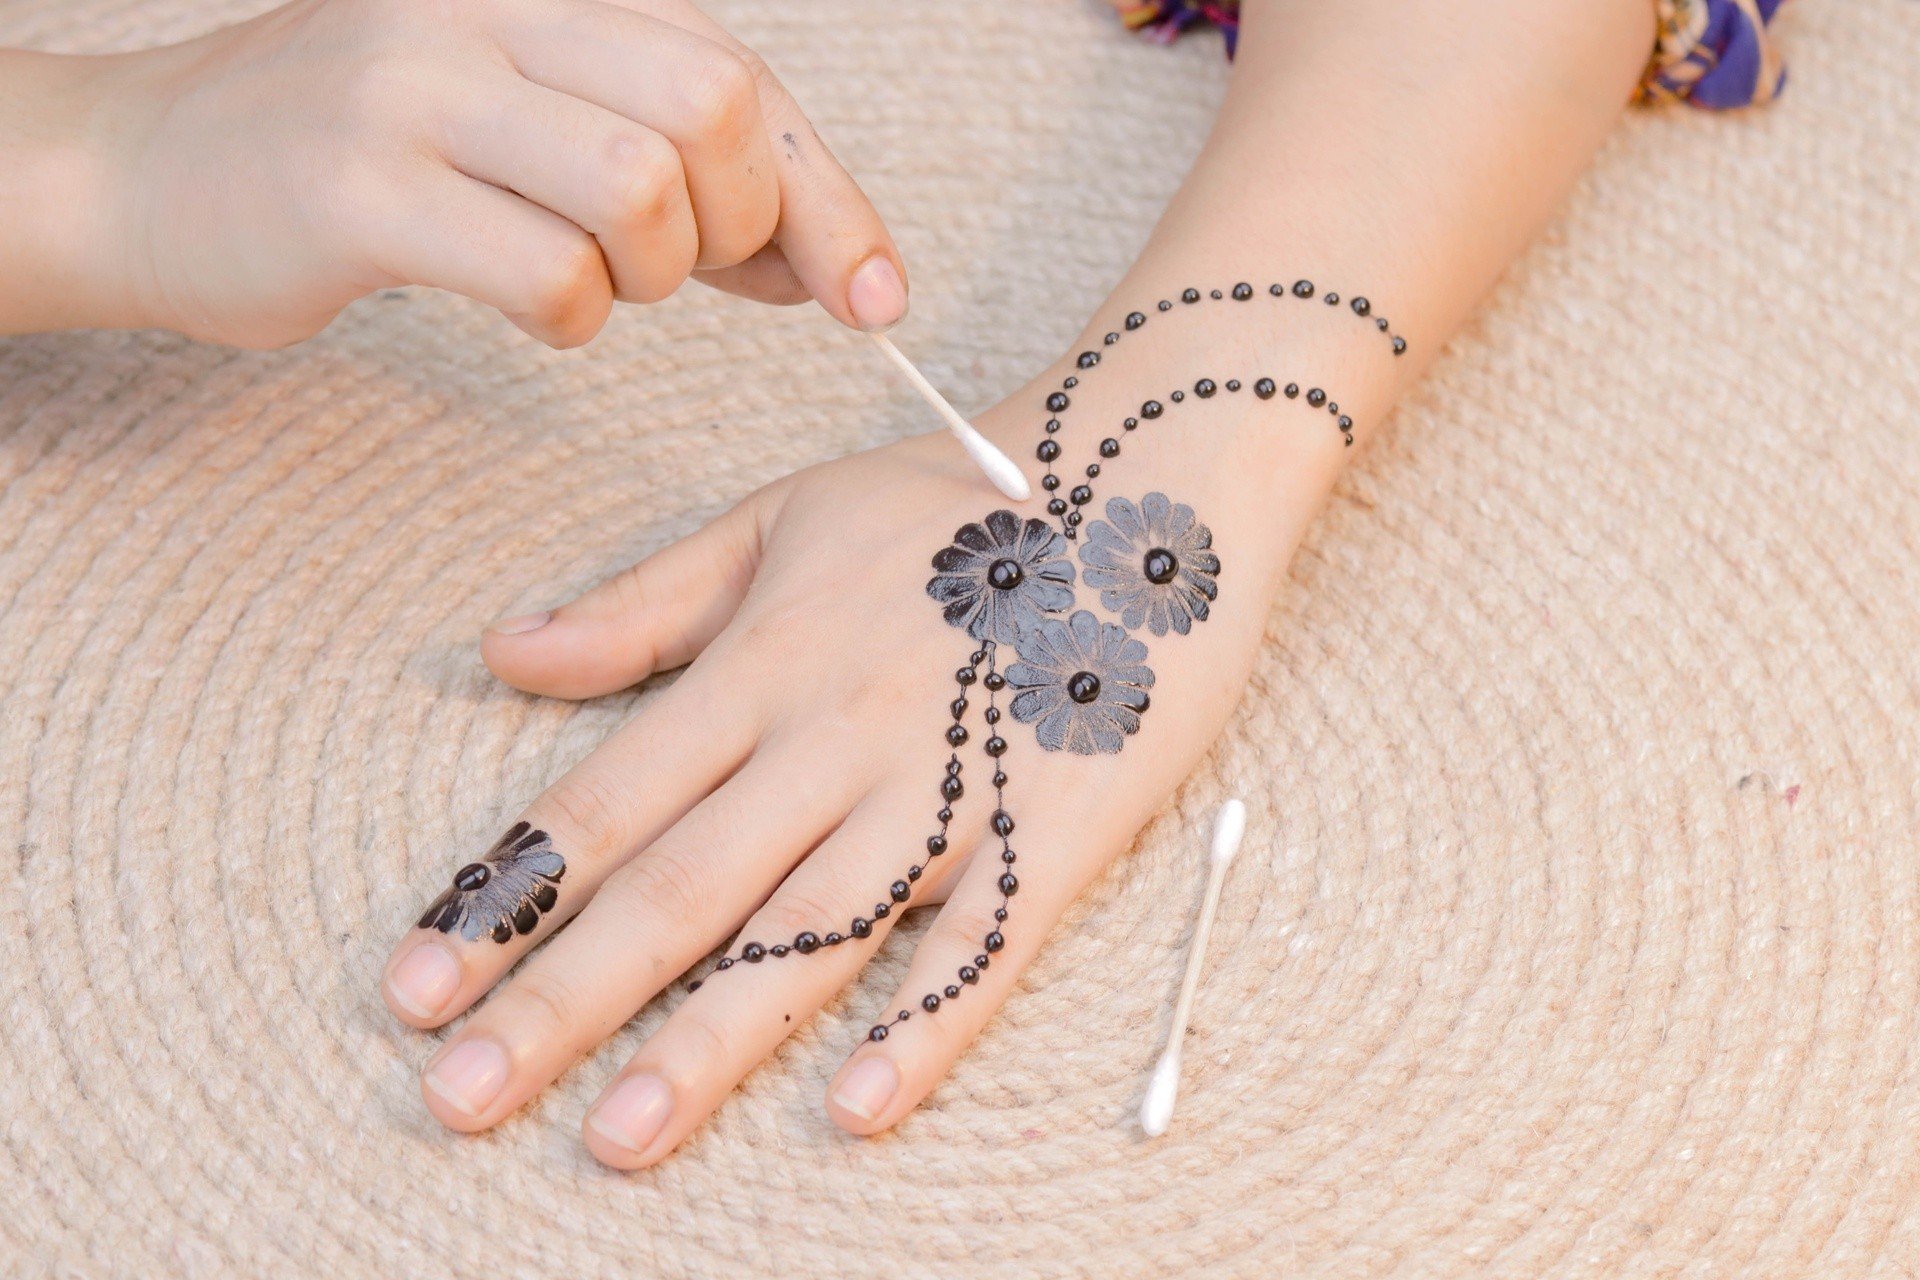 Tatuaże z henny – naturalna ozdoba skóry czy zagrożenie dla zdrowia? Jak  zrobić tymczasowy tatuaż na dłoniach i jaka henna jest bezpieczna? | Strona  Zdrowia